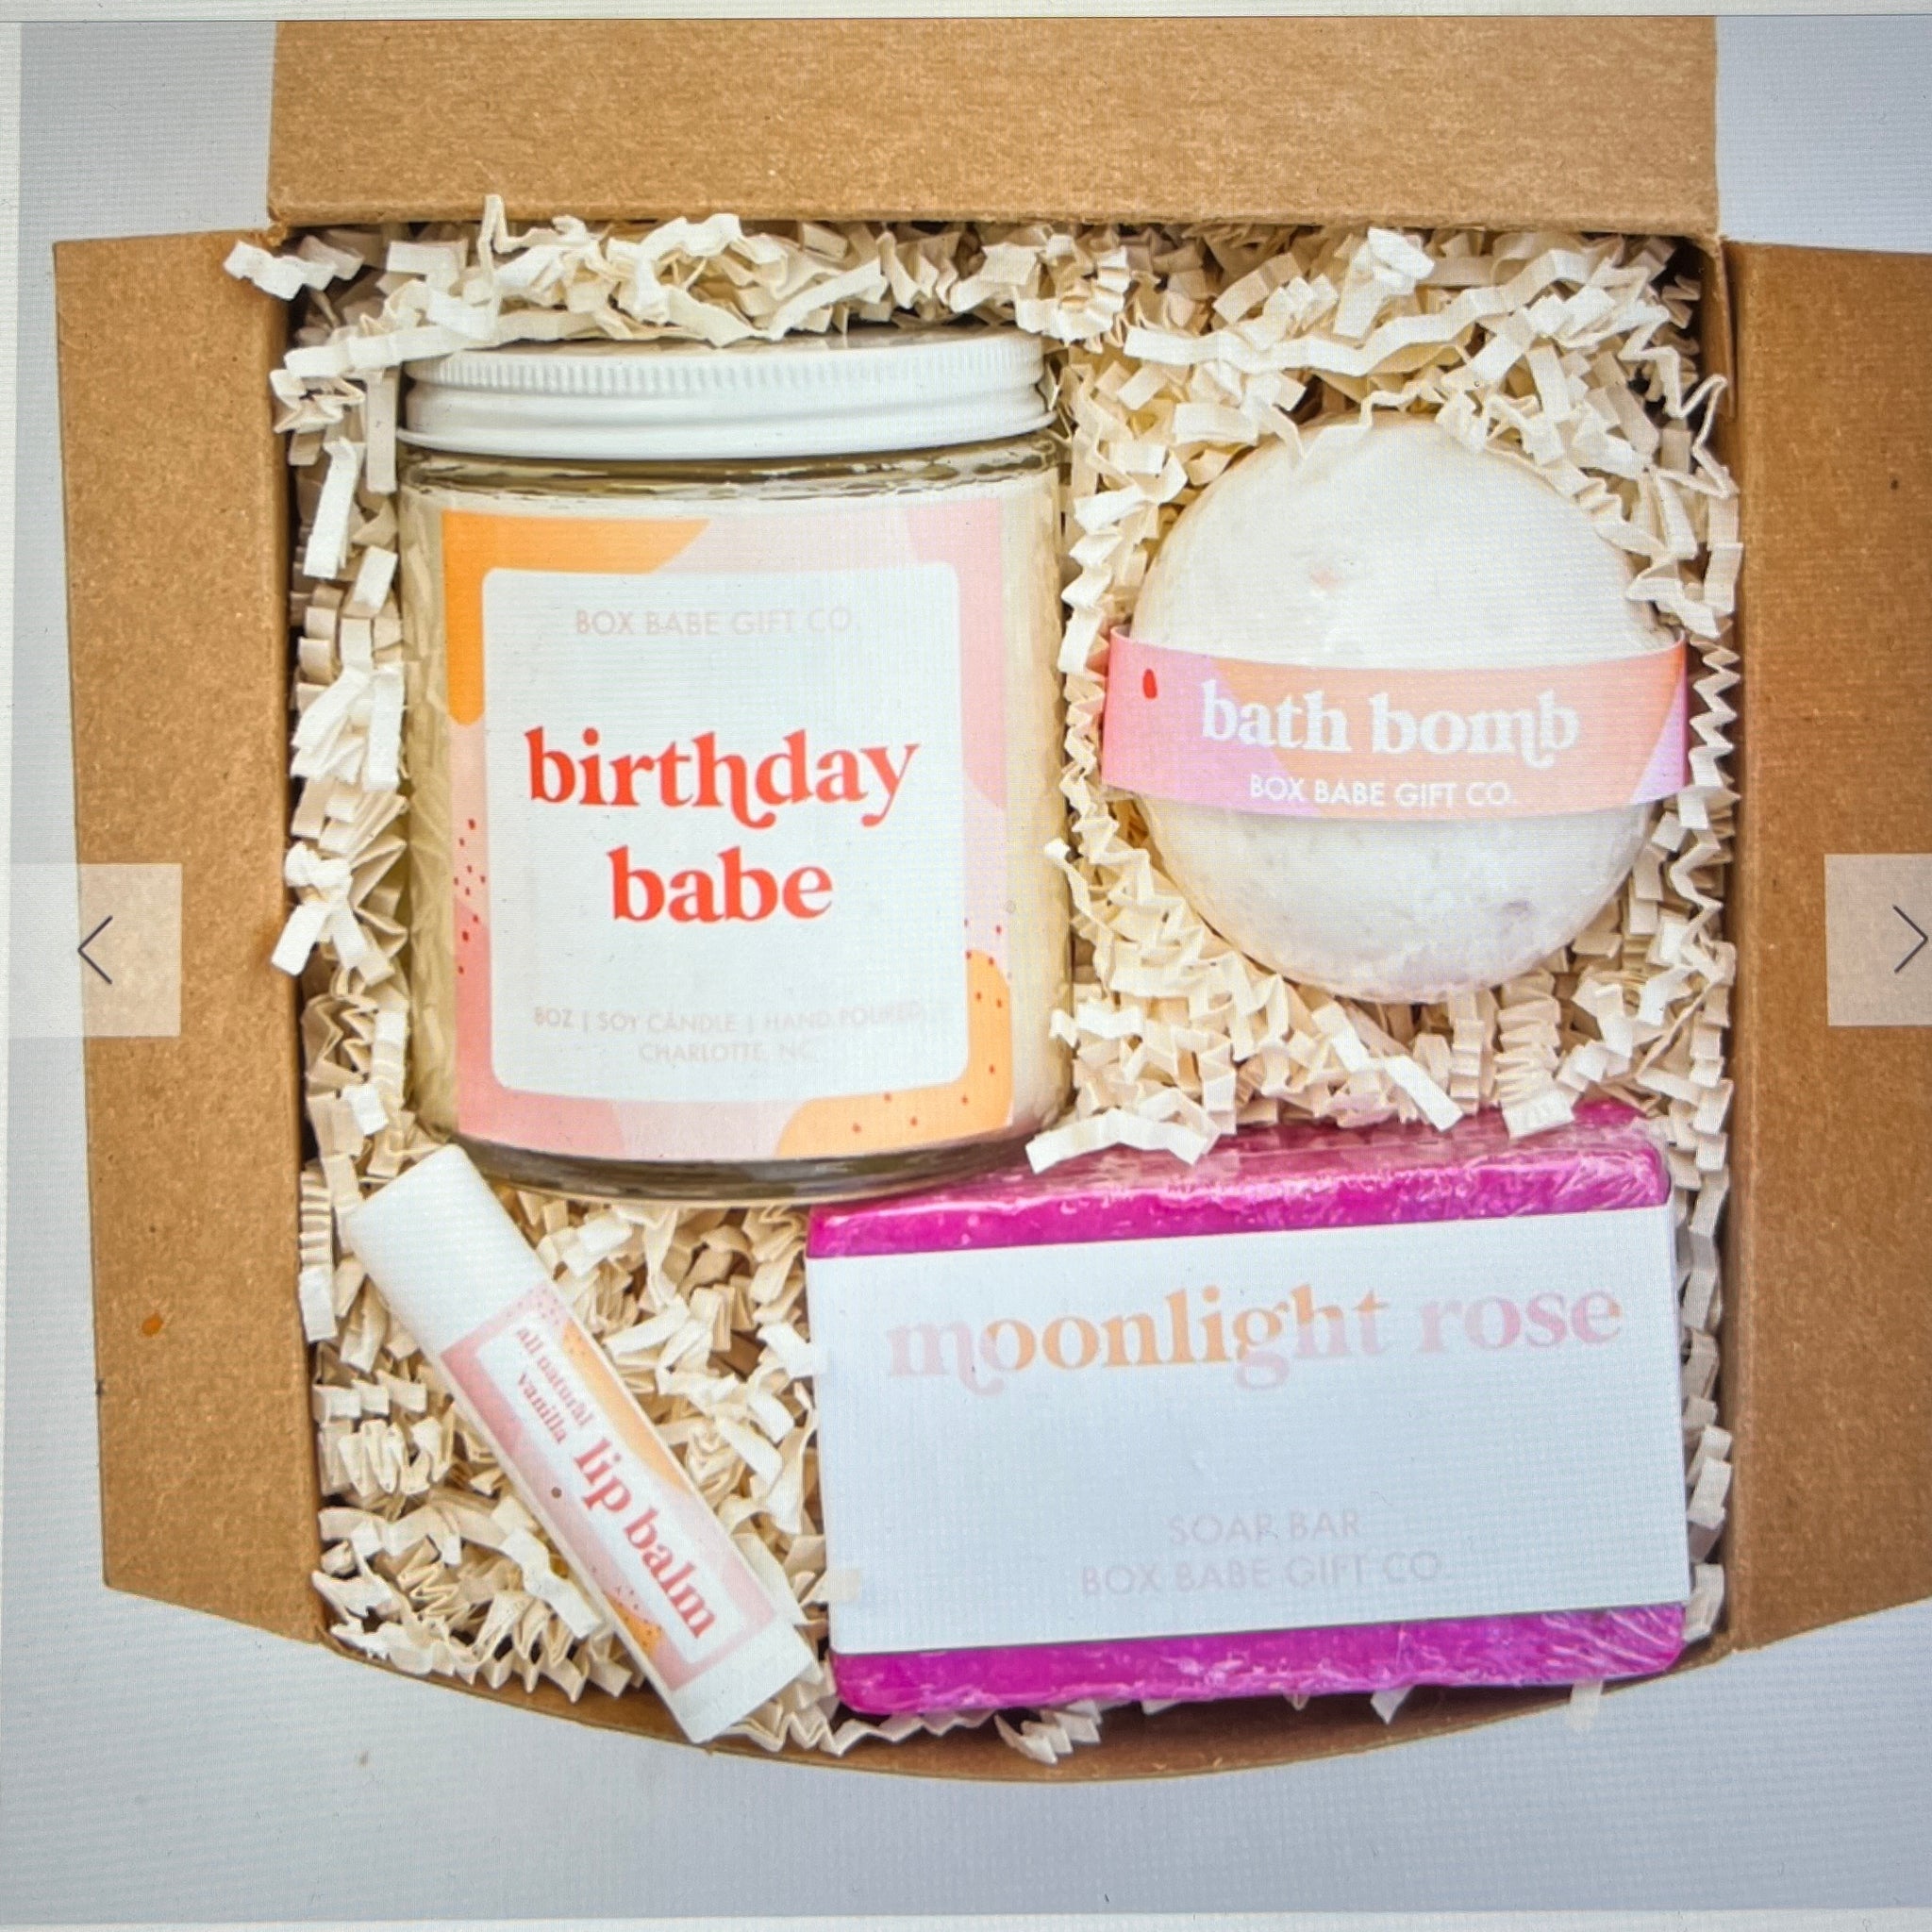 Birthday babe gift sets